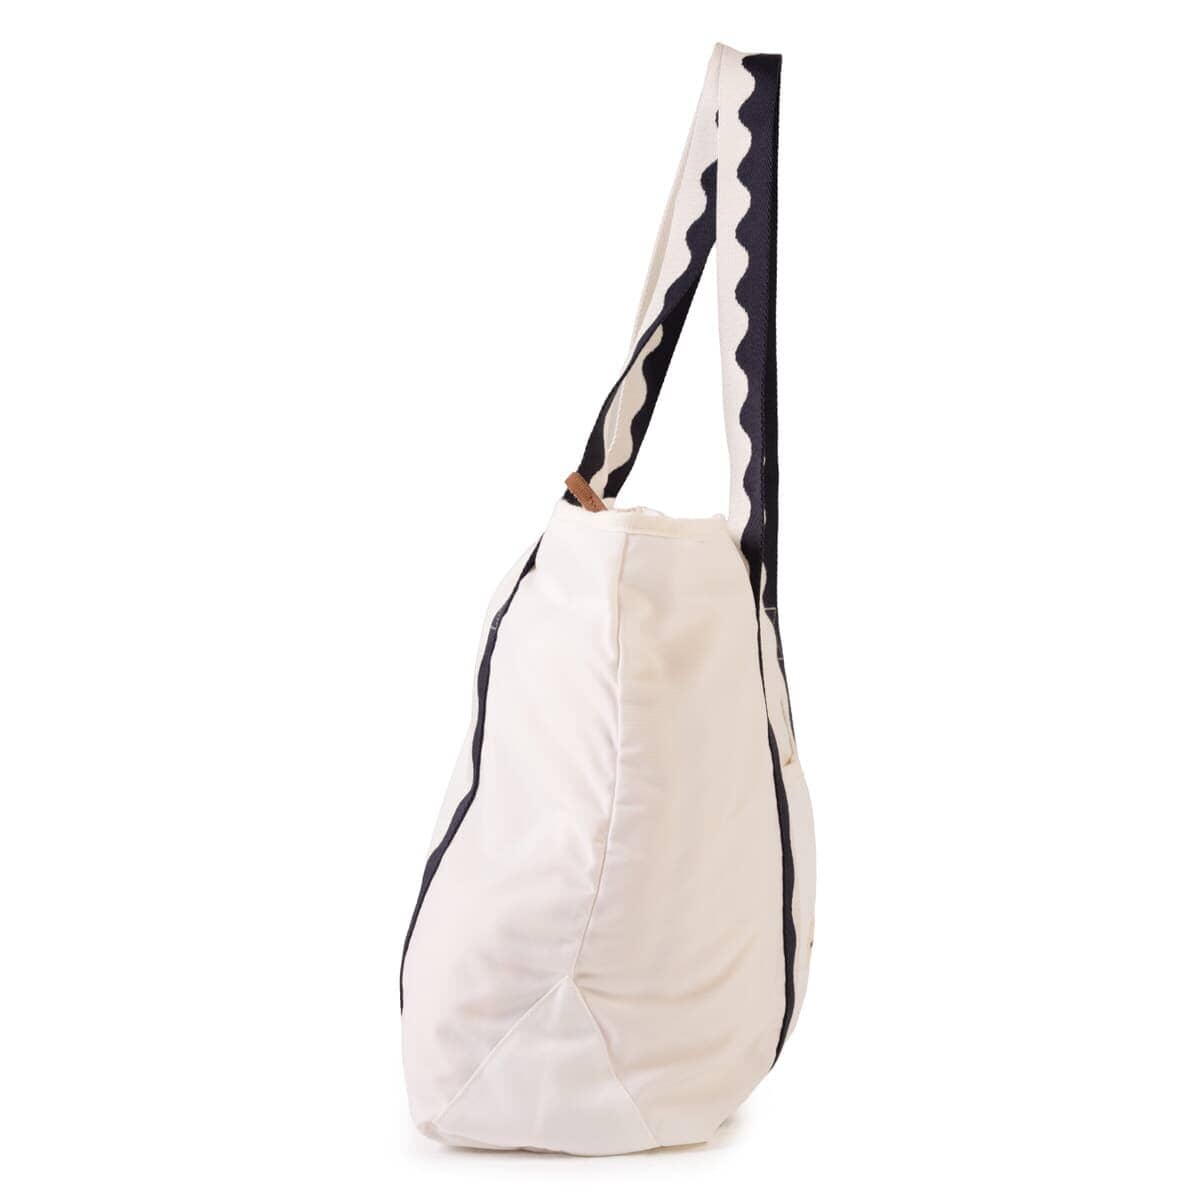 Studio image of riviera white beach bag